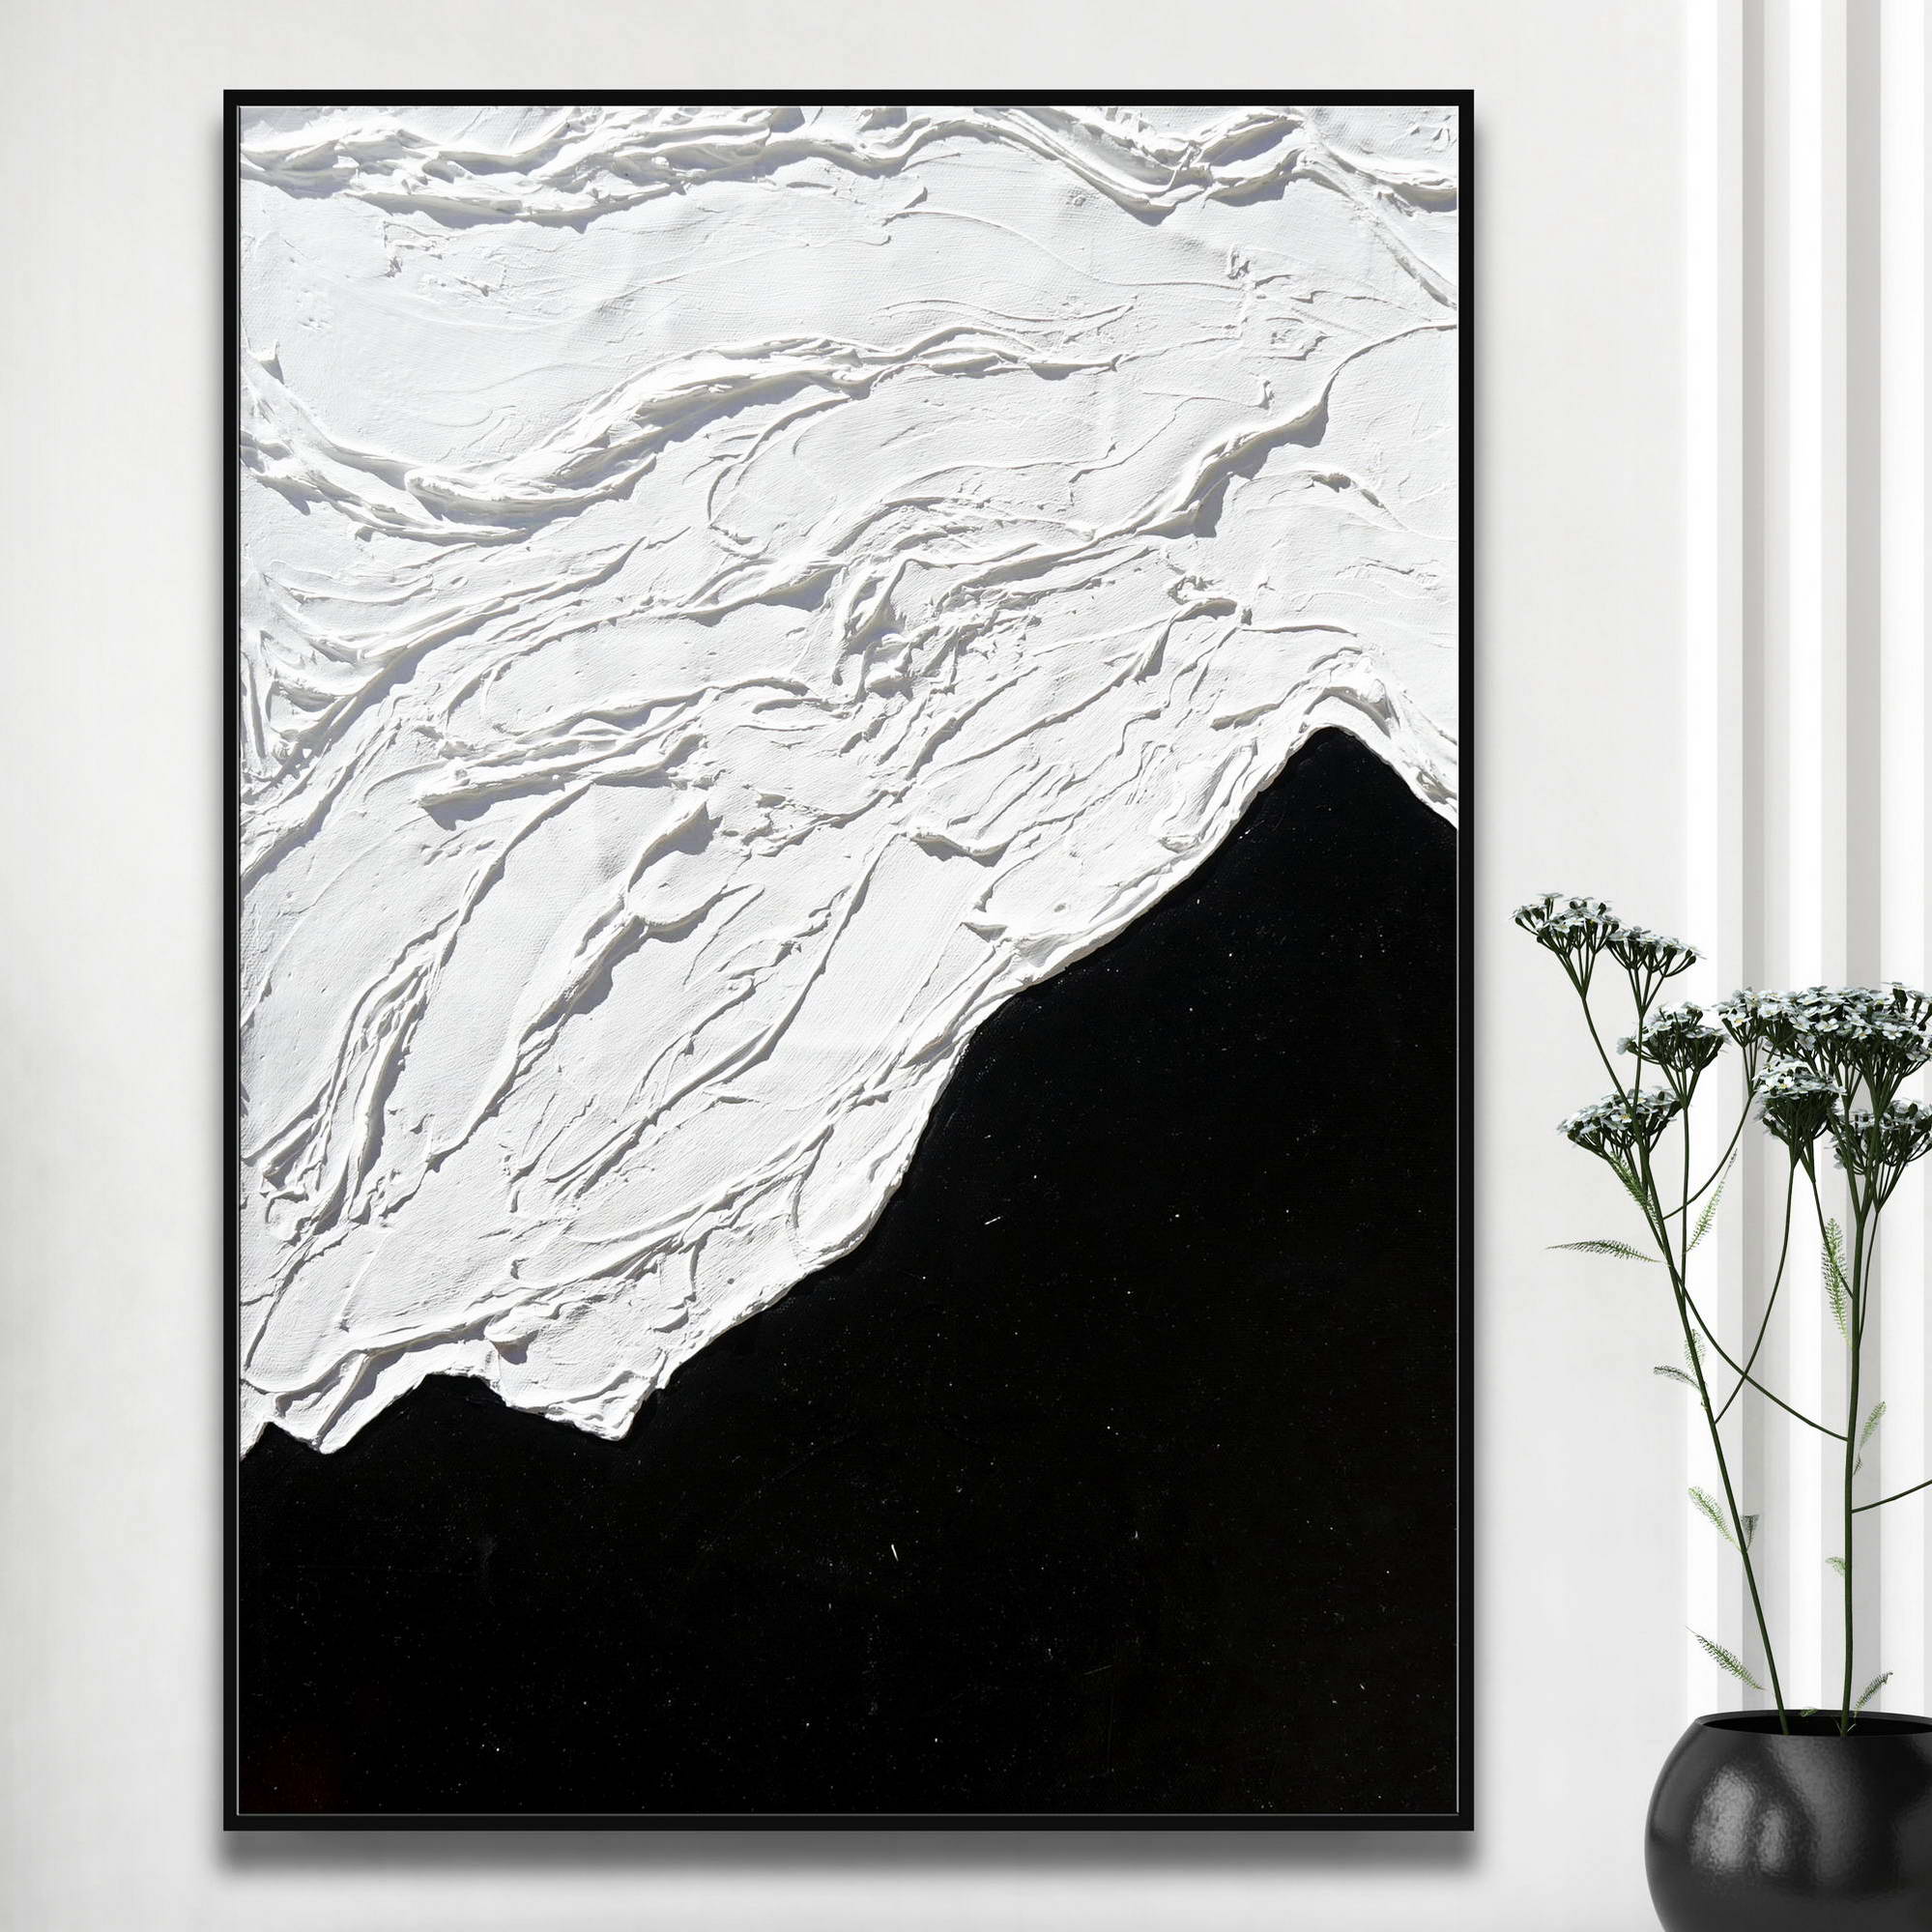 Quadro astratto con metà superiore texture bianca e metà inferiore nera liscia accanto a vaso con fiori